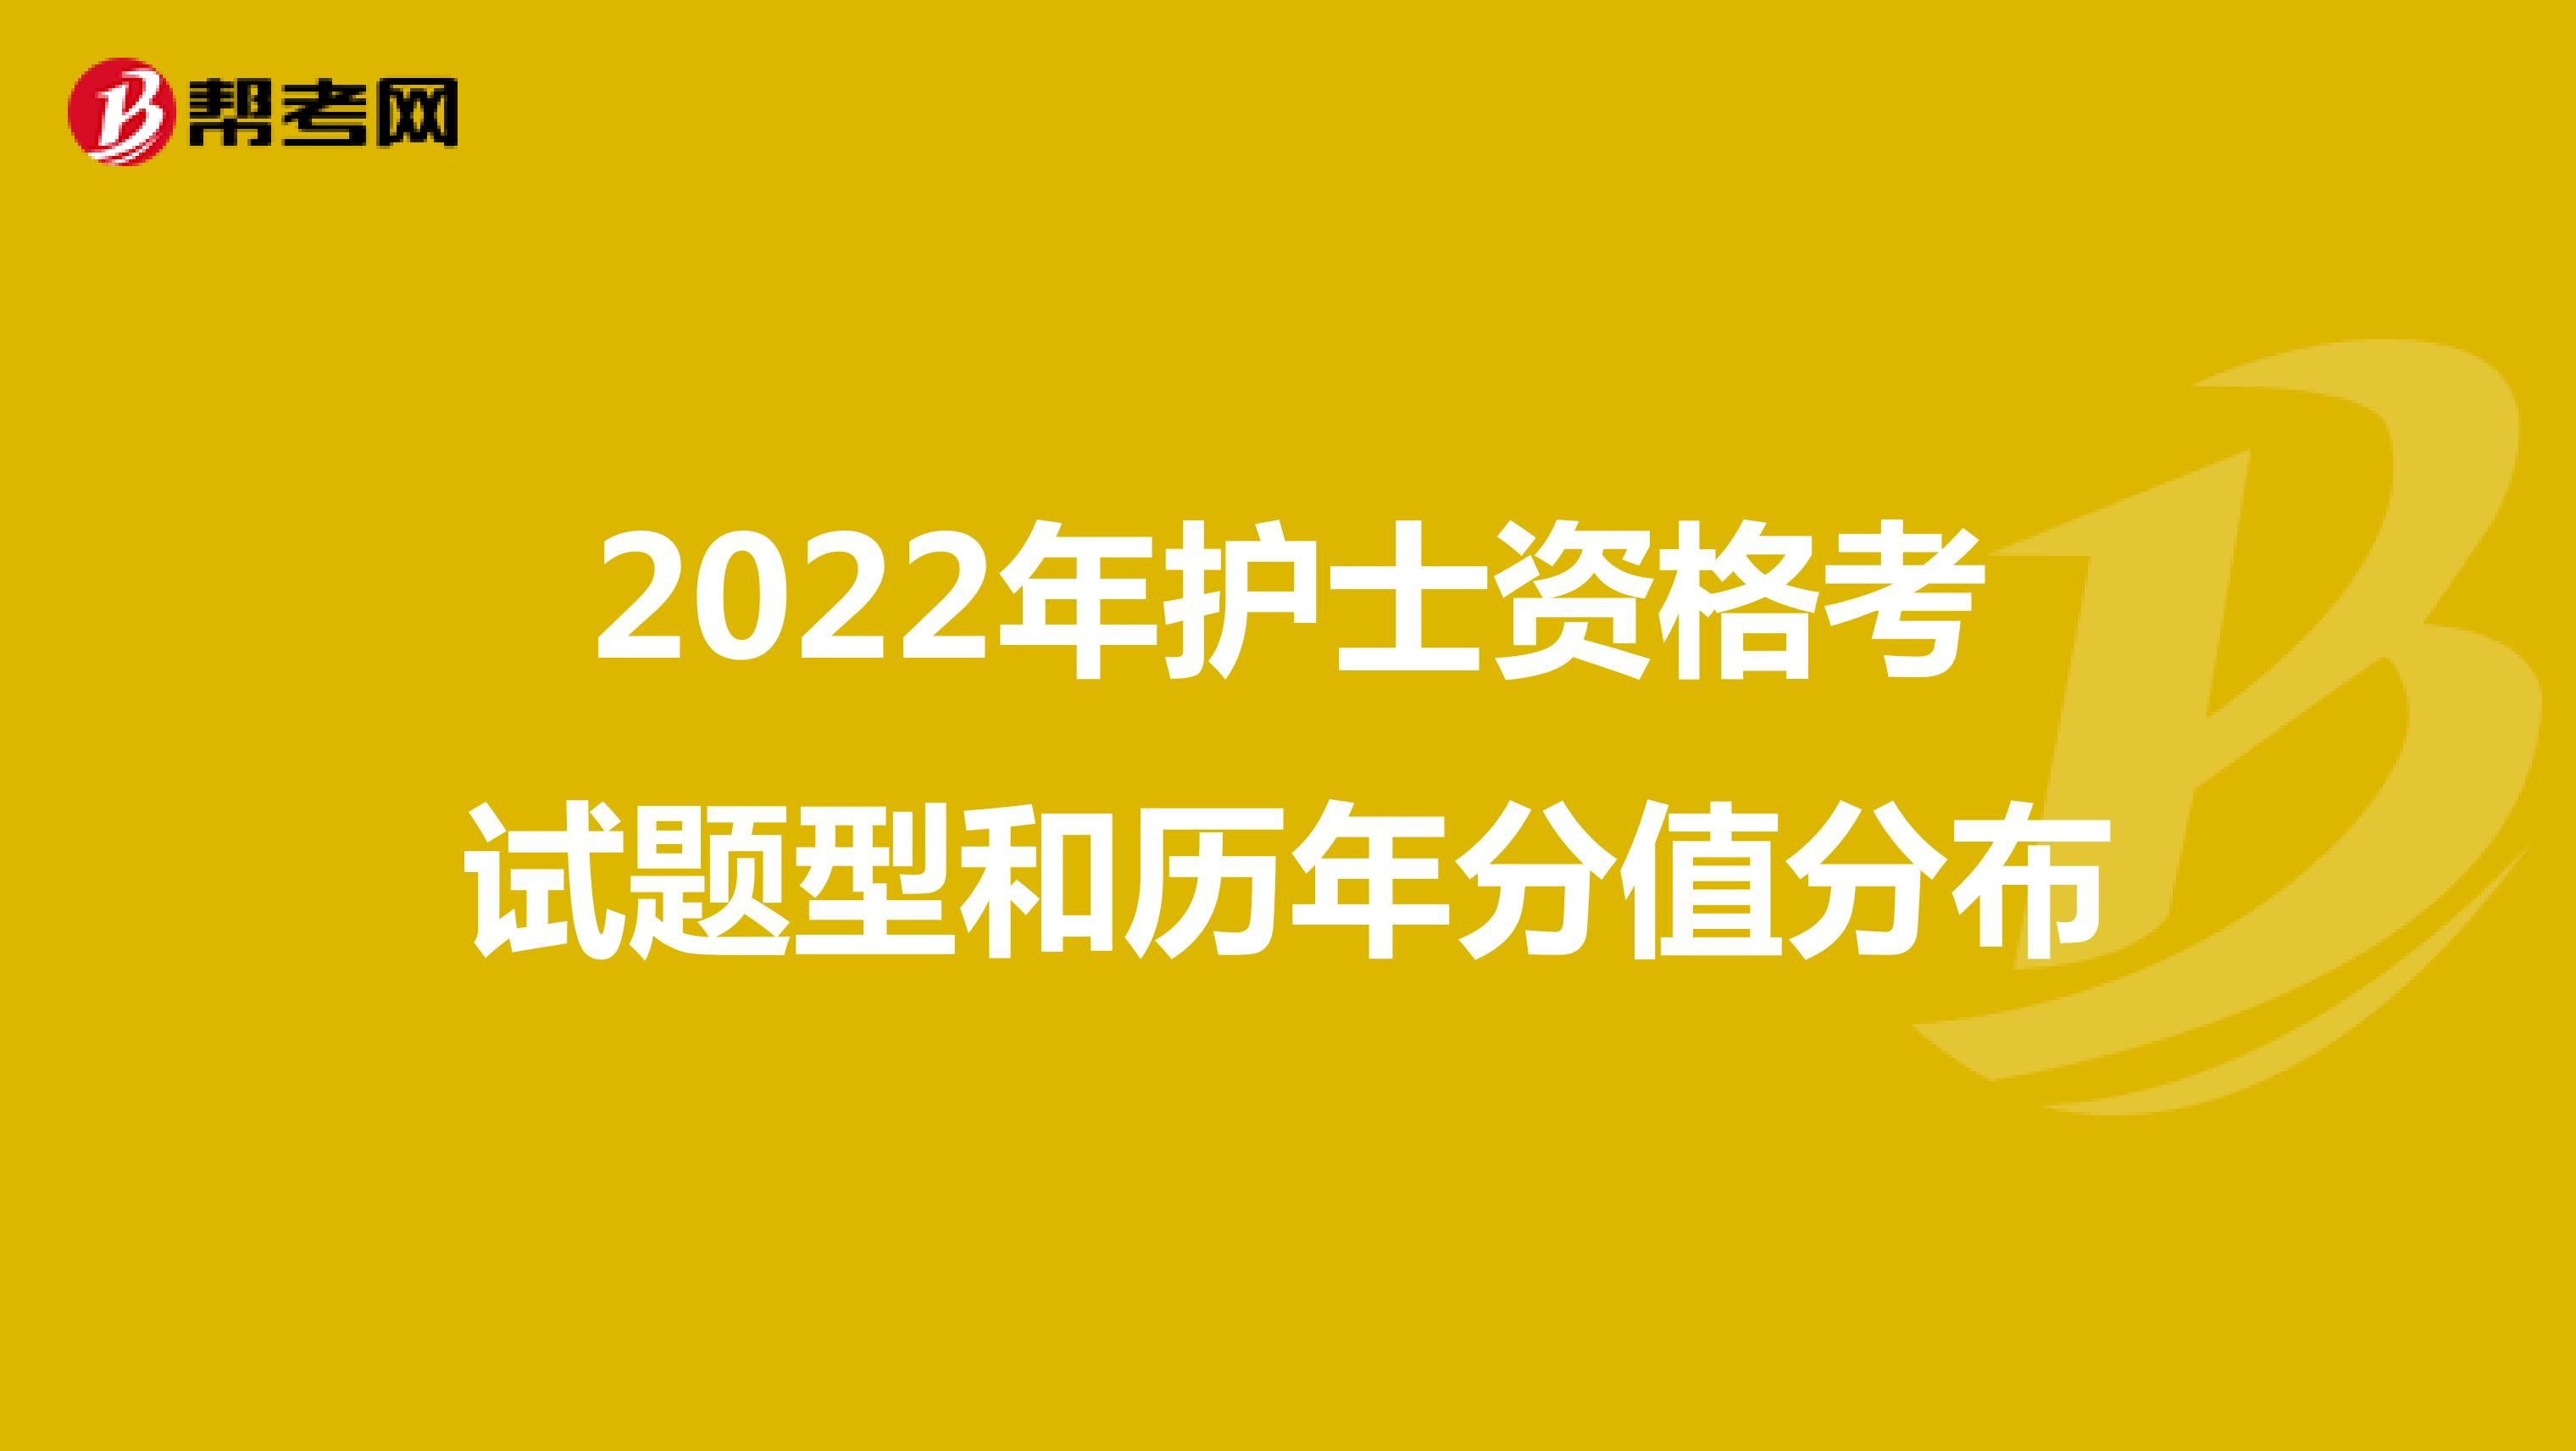 2022年护士资格考试题型和历年分值分布